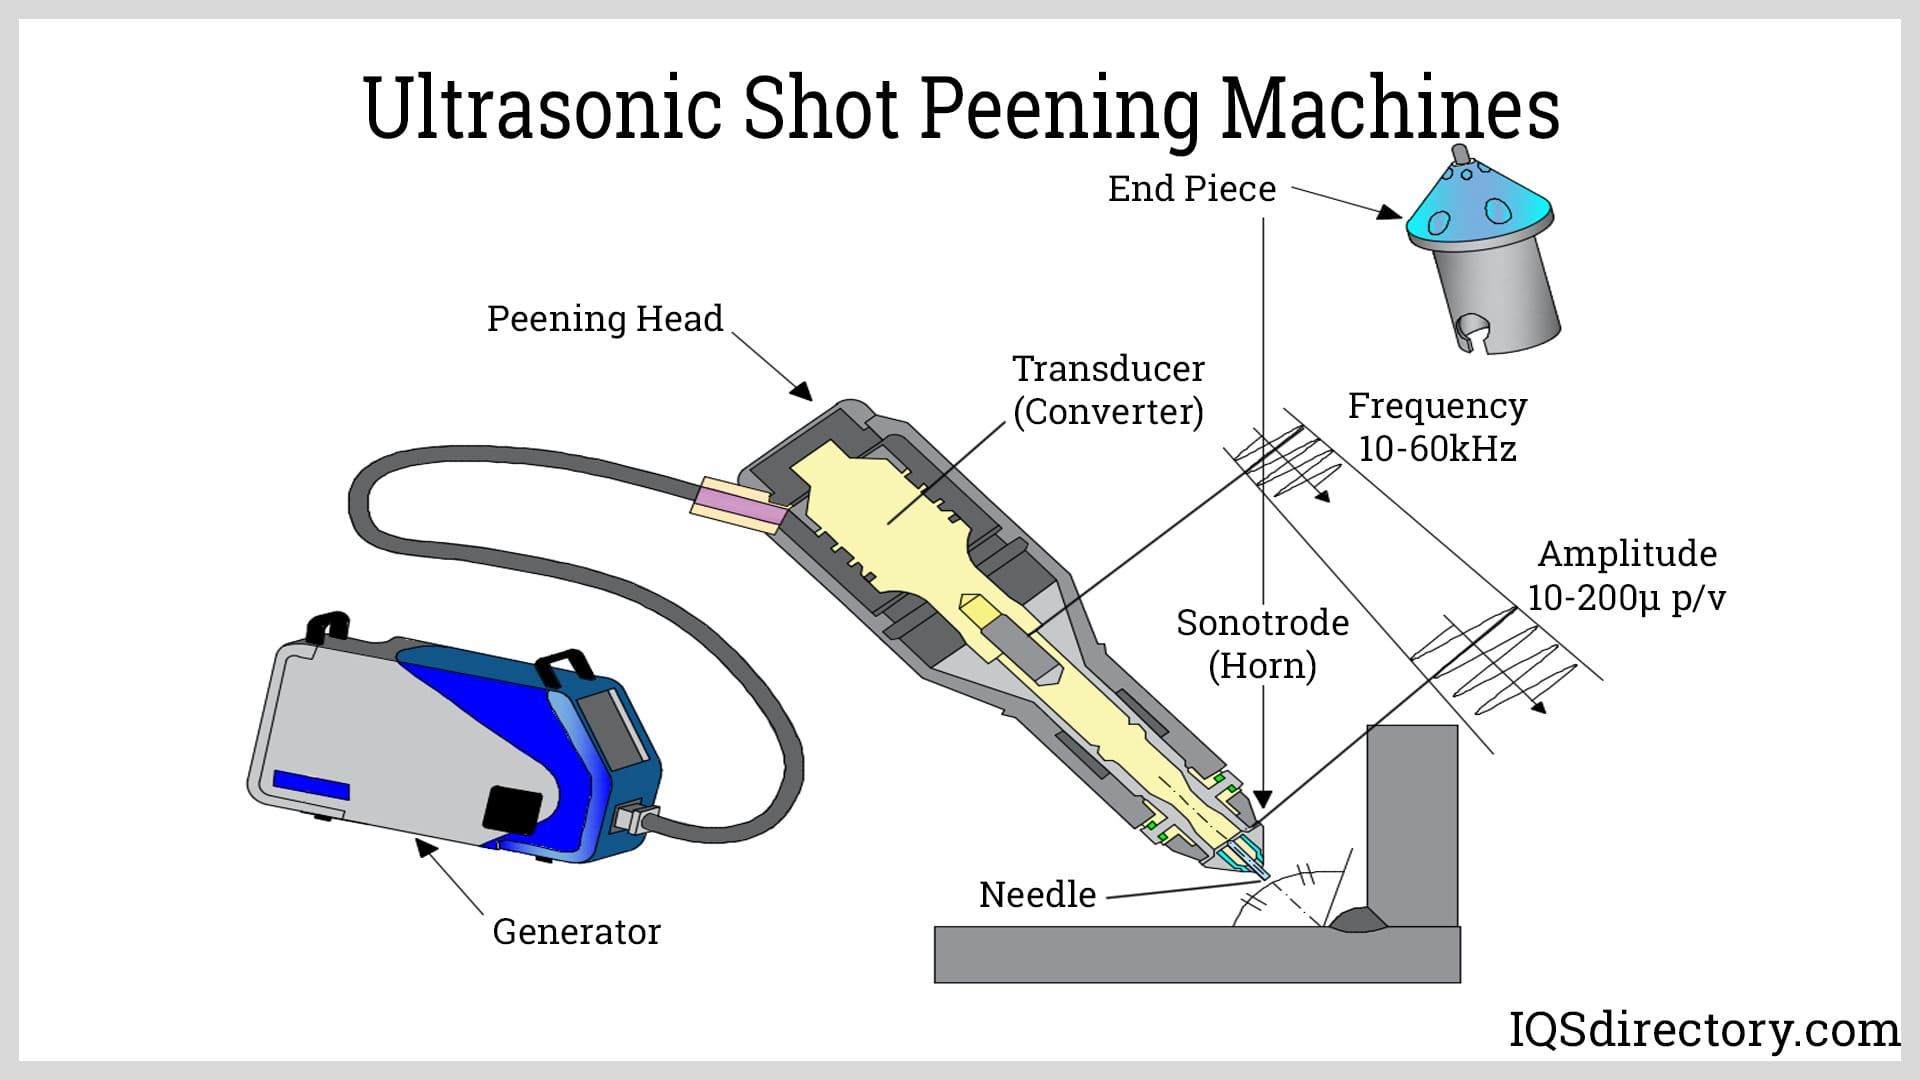 Ultrasonic Shot Peening Machines